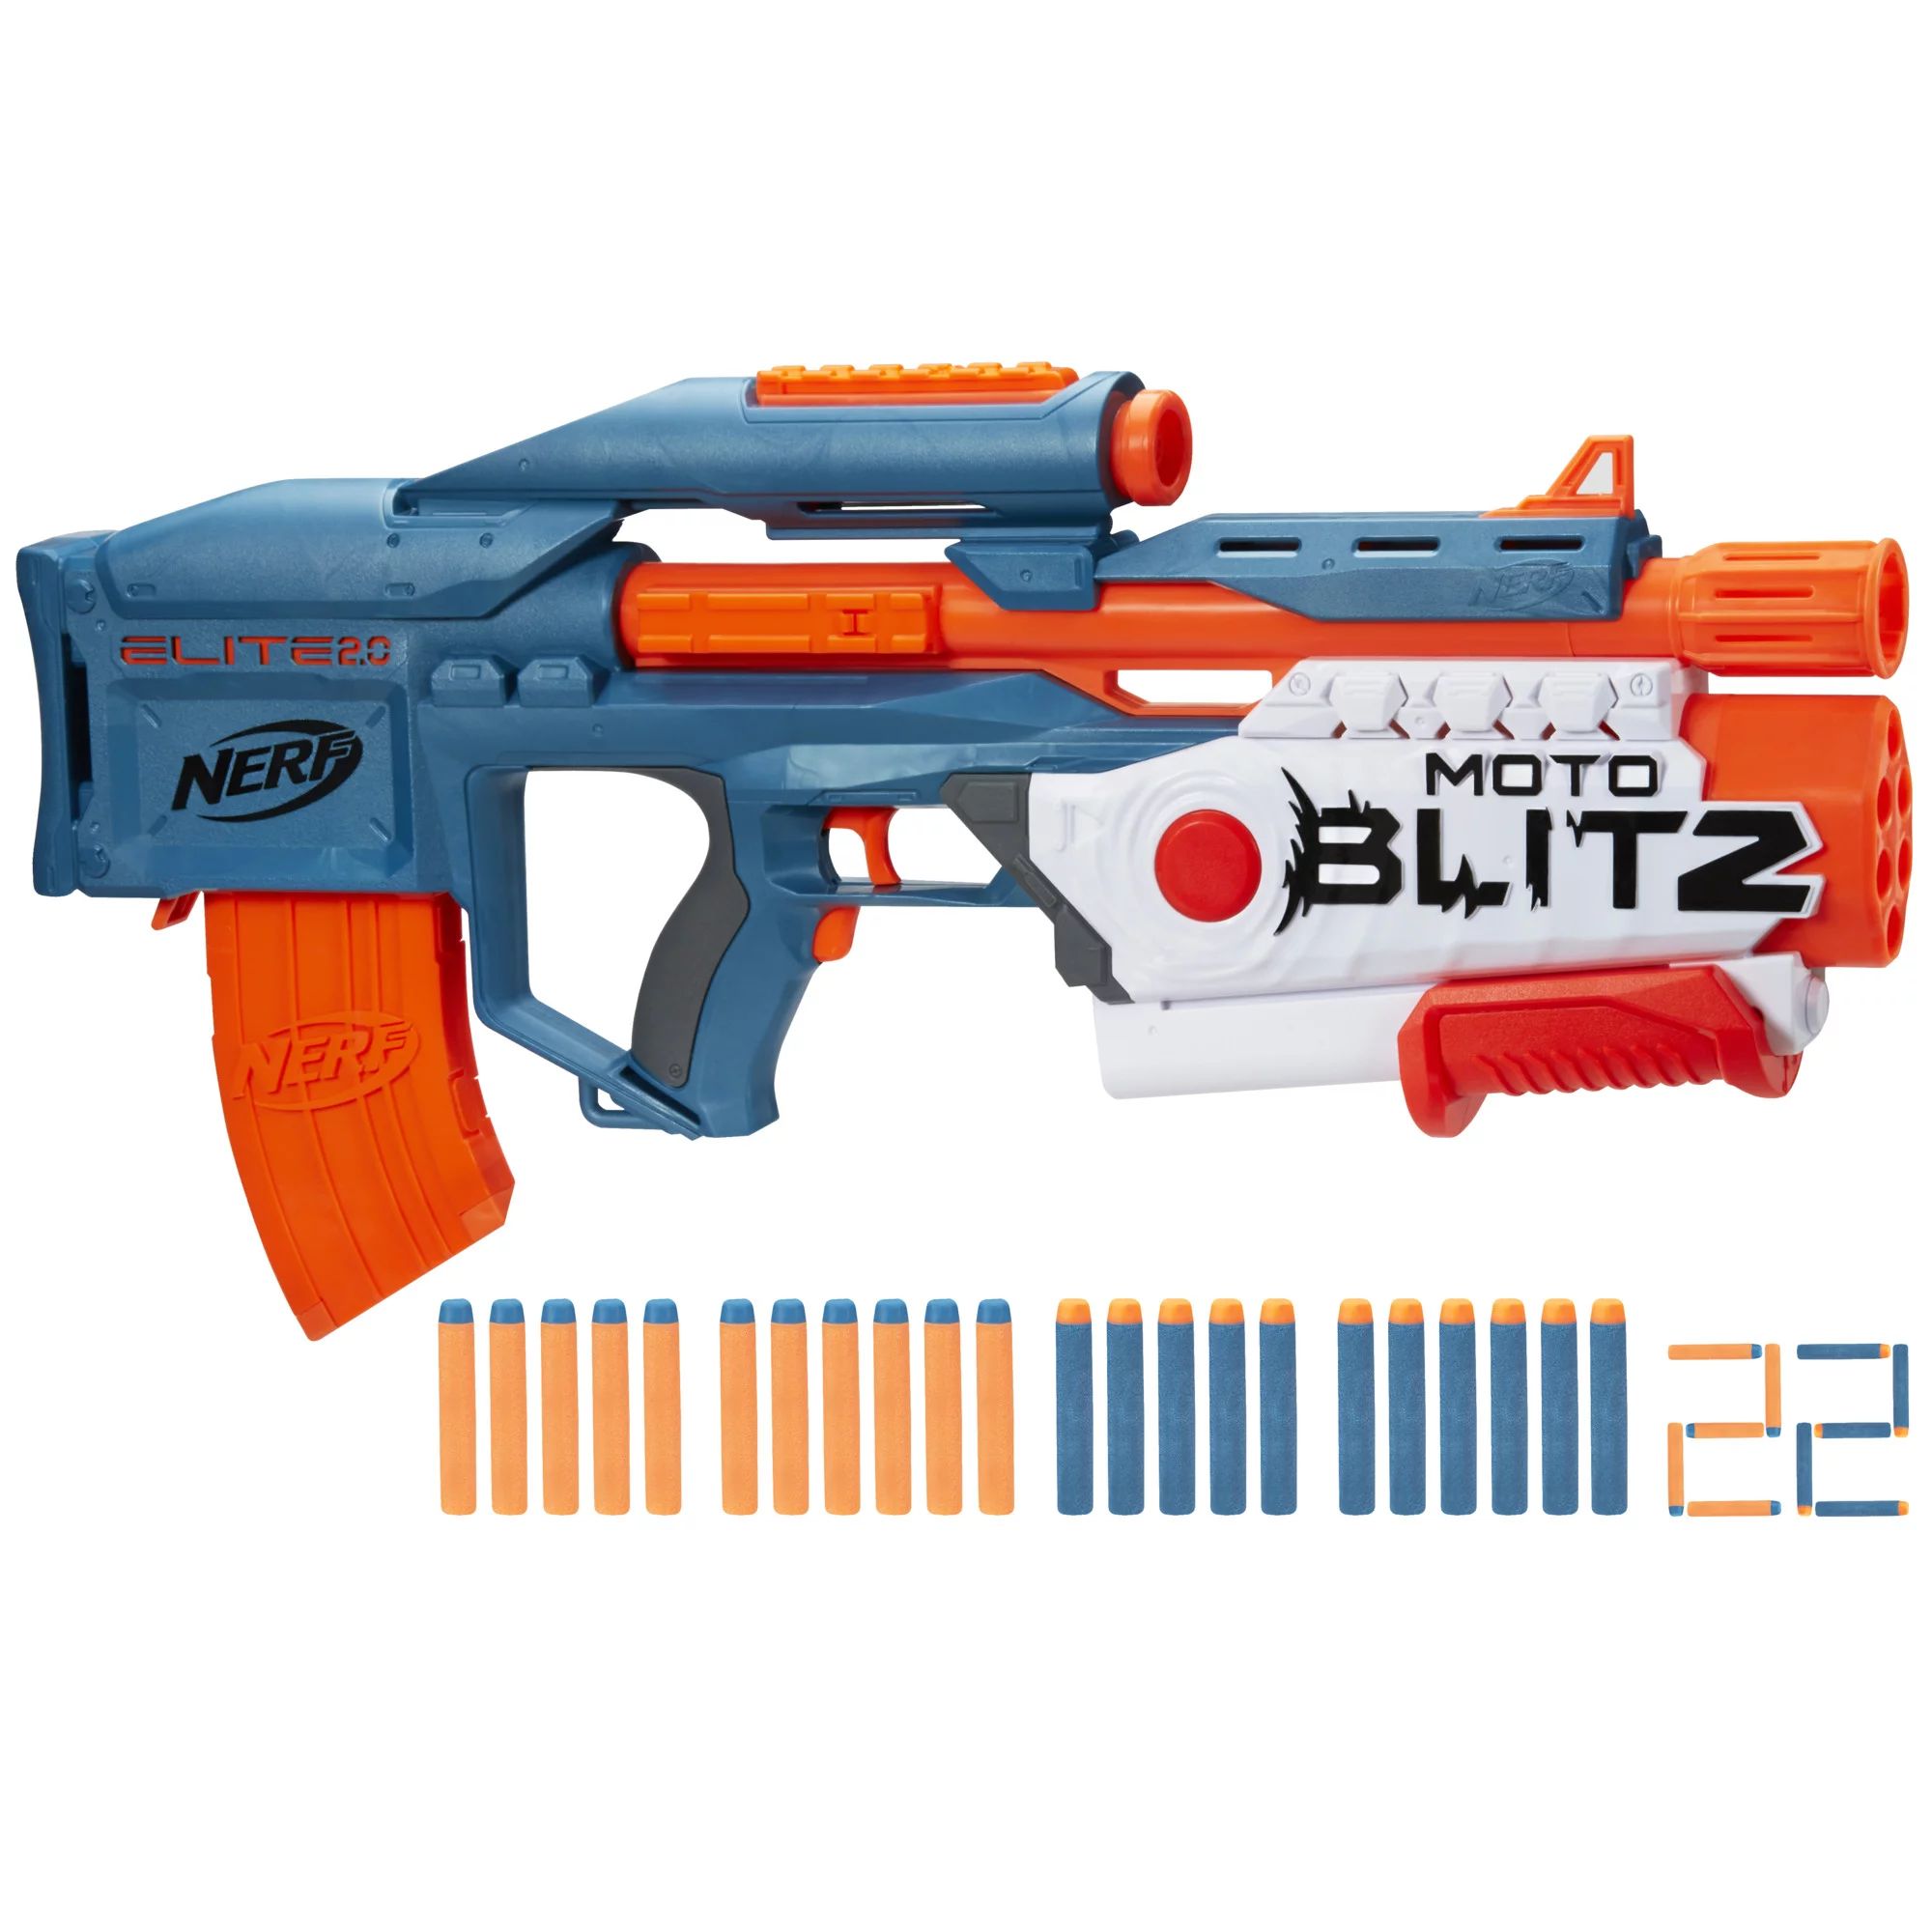 Nerf Elite 2.0 Motoblitz Motorized Nerf Blaster, Outdoor Toys, Airblitz 6 Darts, 22 Darts - Walma... | Walmart (US)